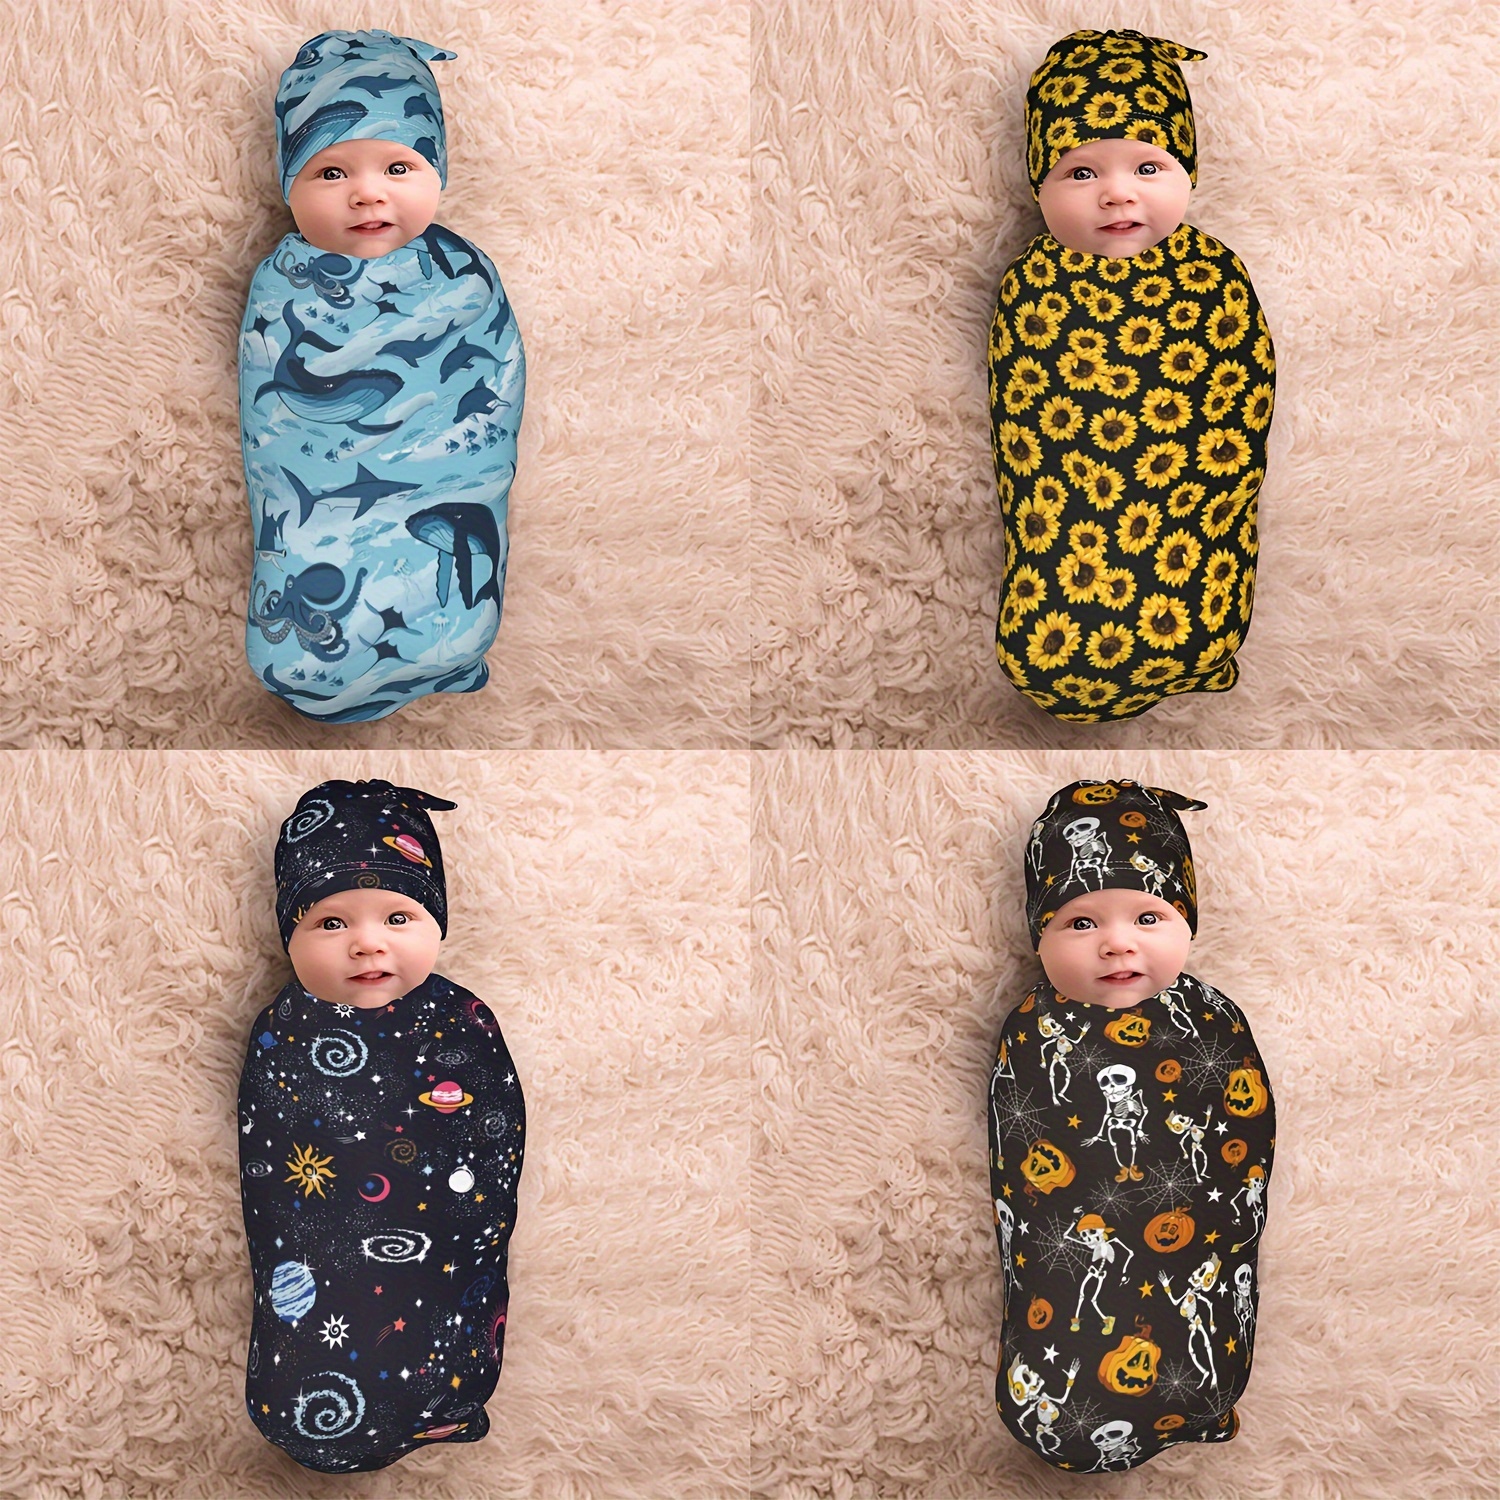 Bebé niña traje-bebé niña vestido-0-3 meses-bebé ducha regalo